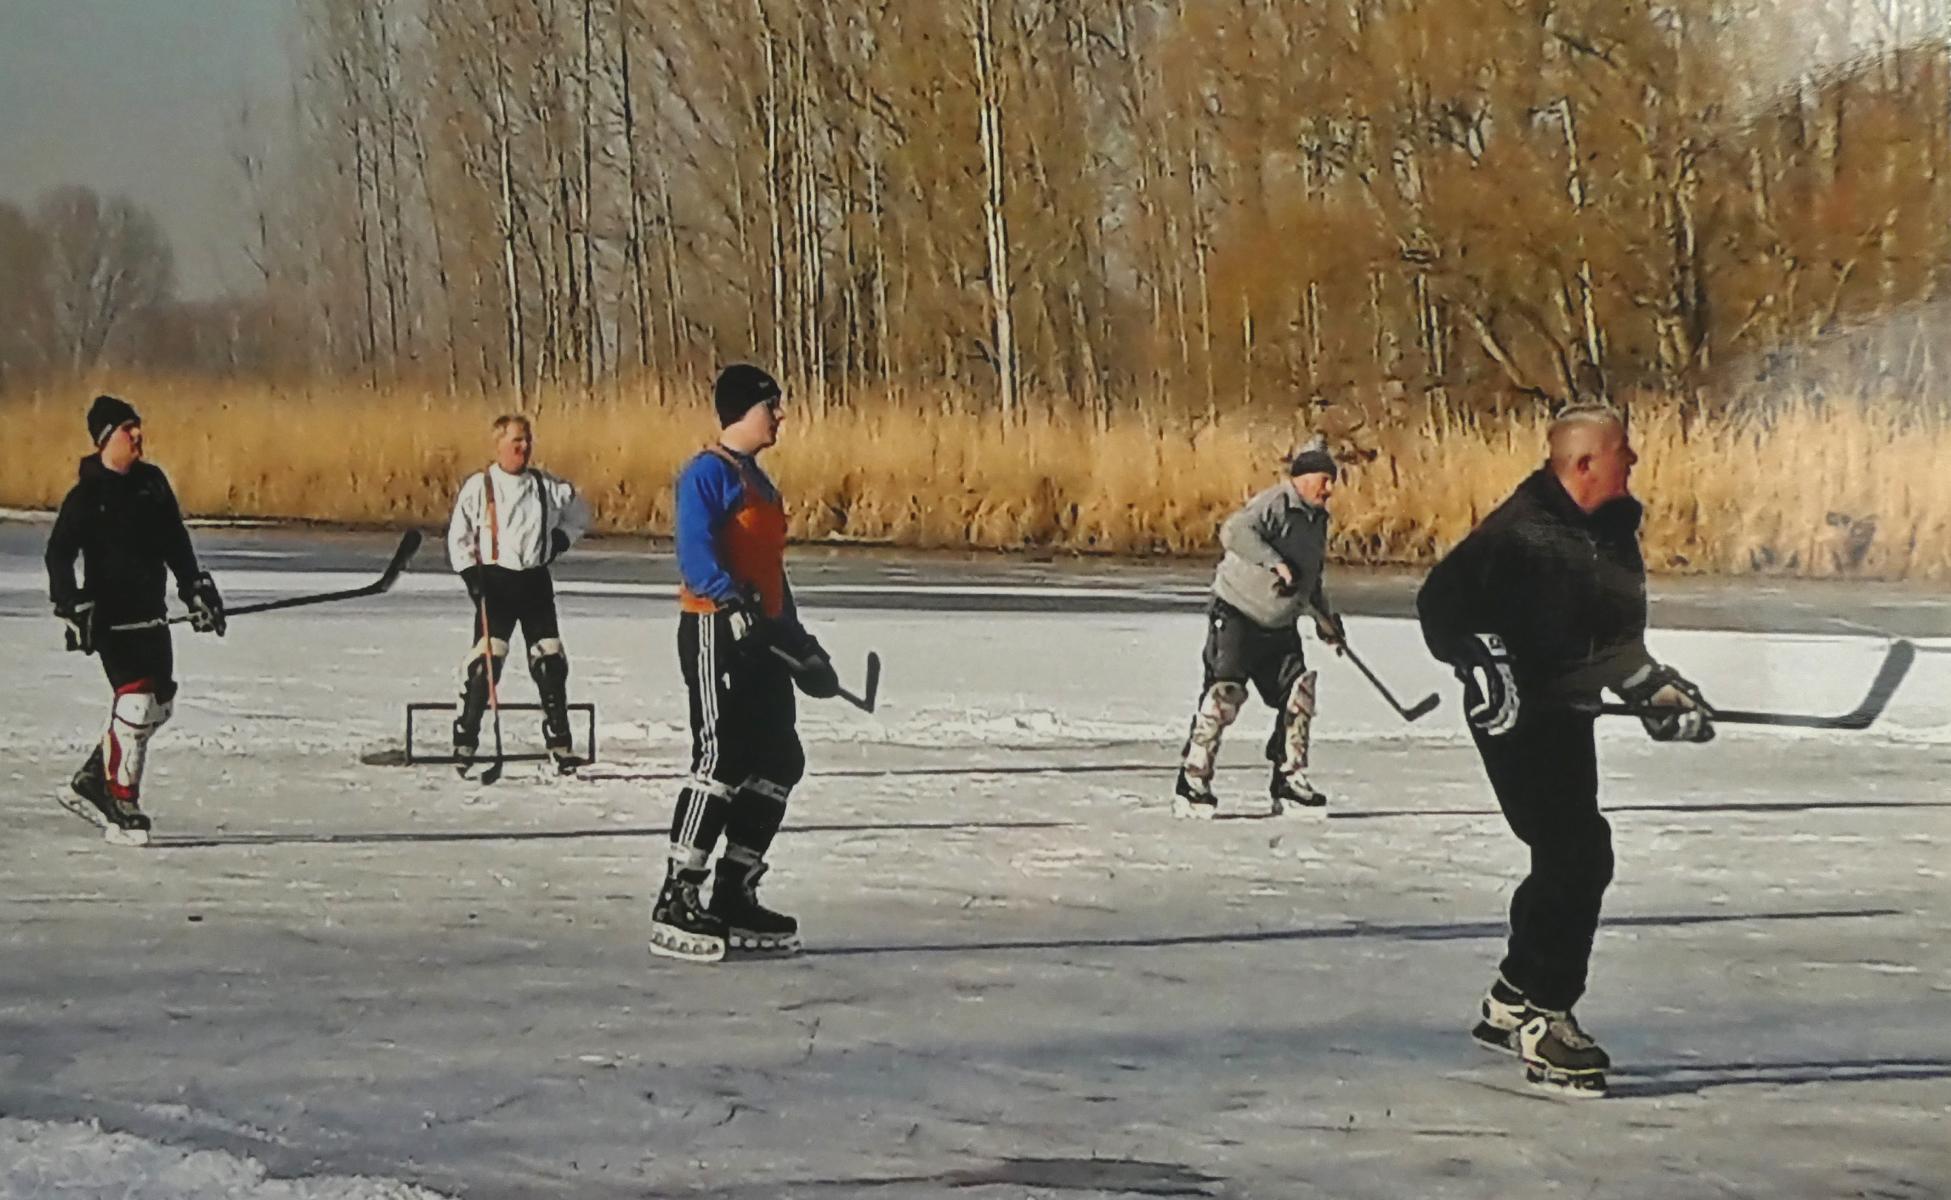 Eishockey auf einem gefrorenen See.